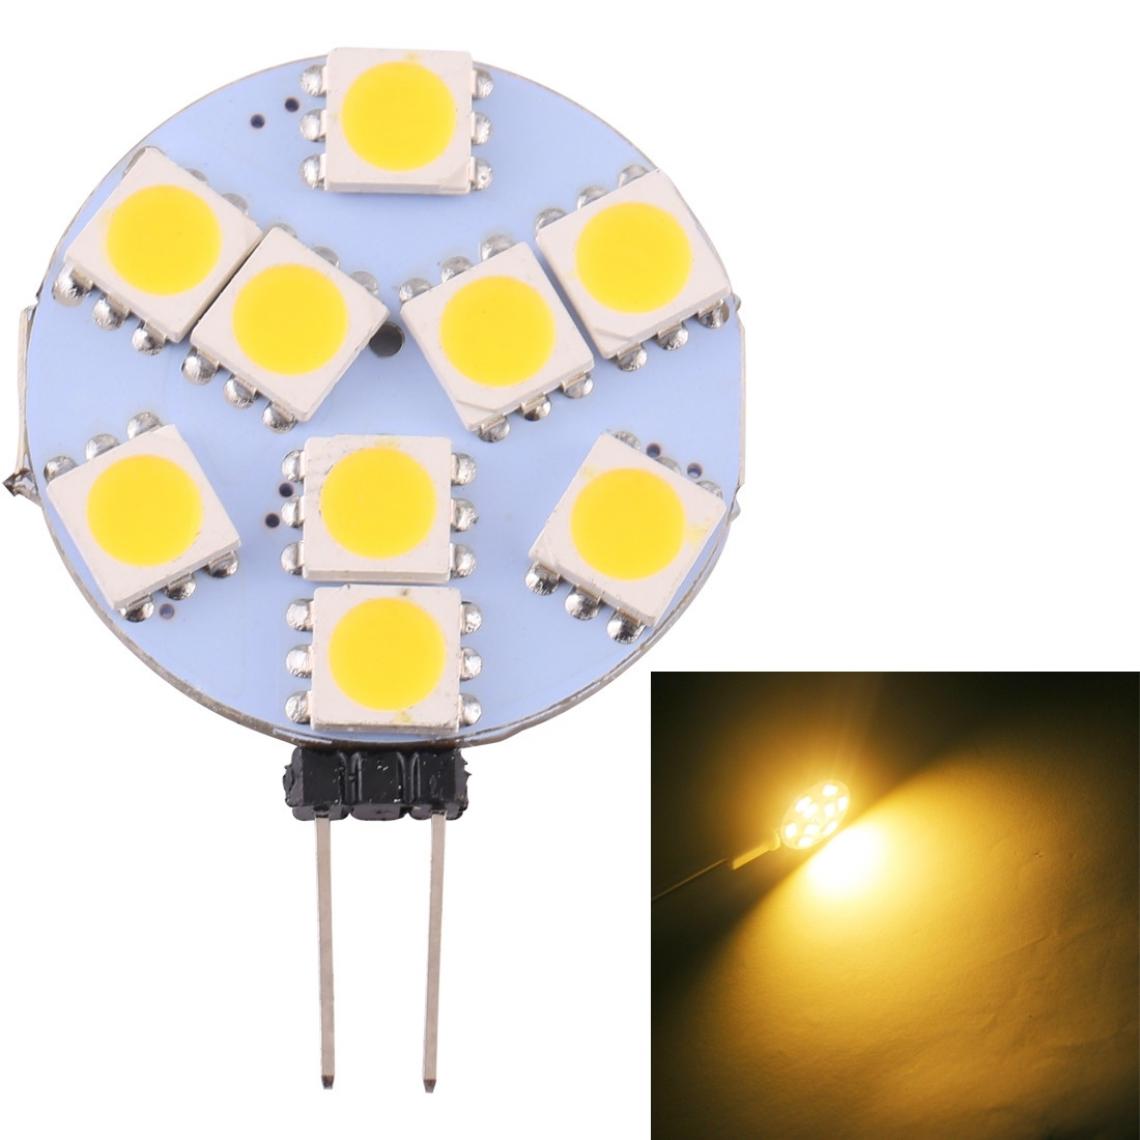 Wewoo - G9 9 LEDs SMD 5050 108LM 2800-3200K Ampoule de lampe à culot à intensité variable à variableDC 12V blanc chaud - Ampoules LED